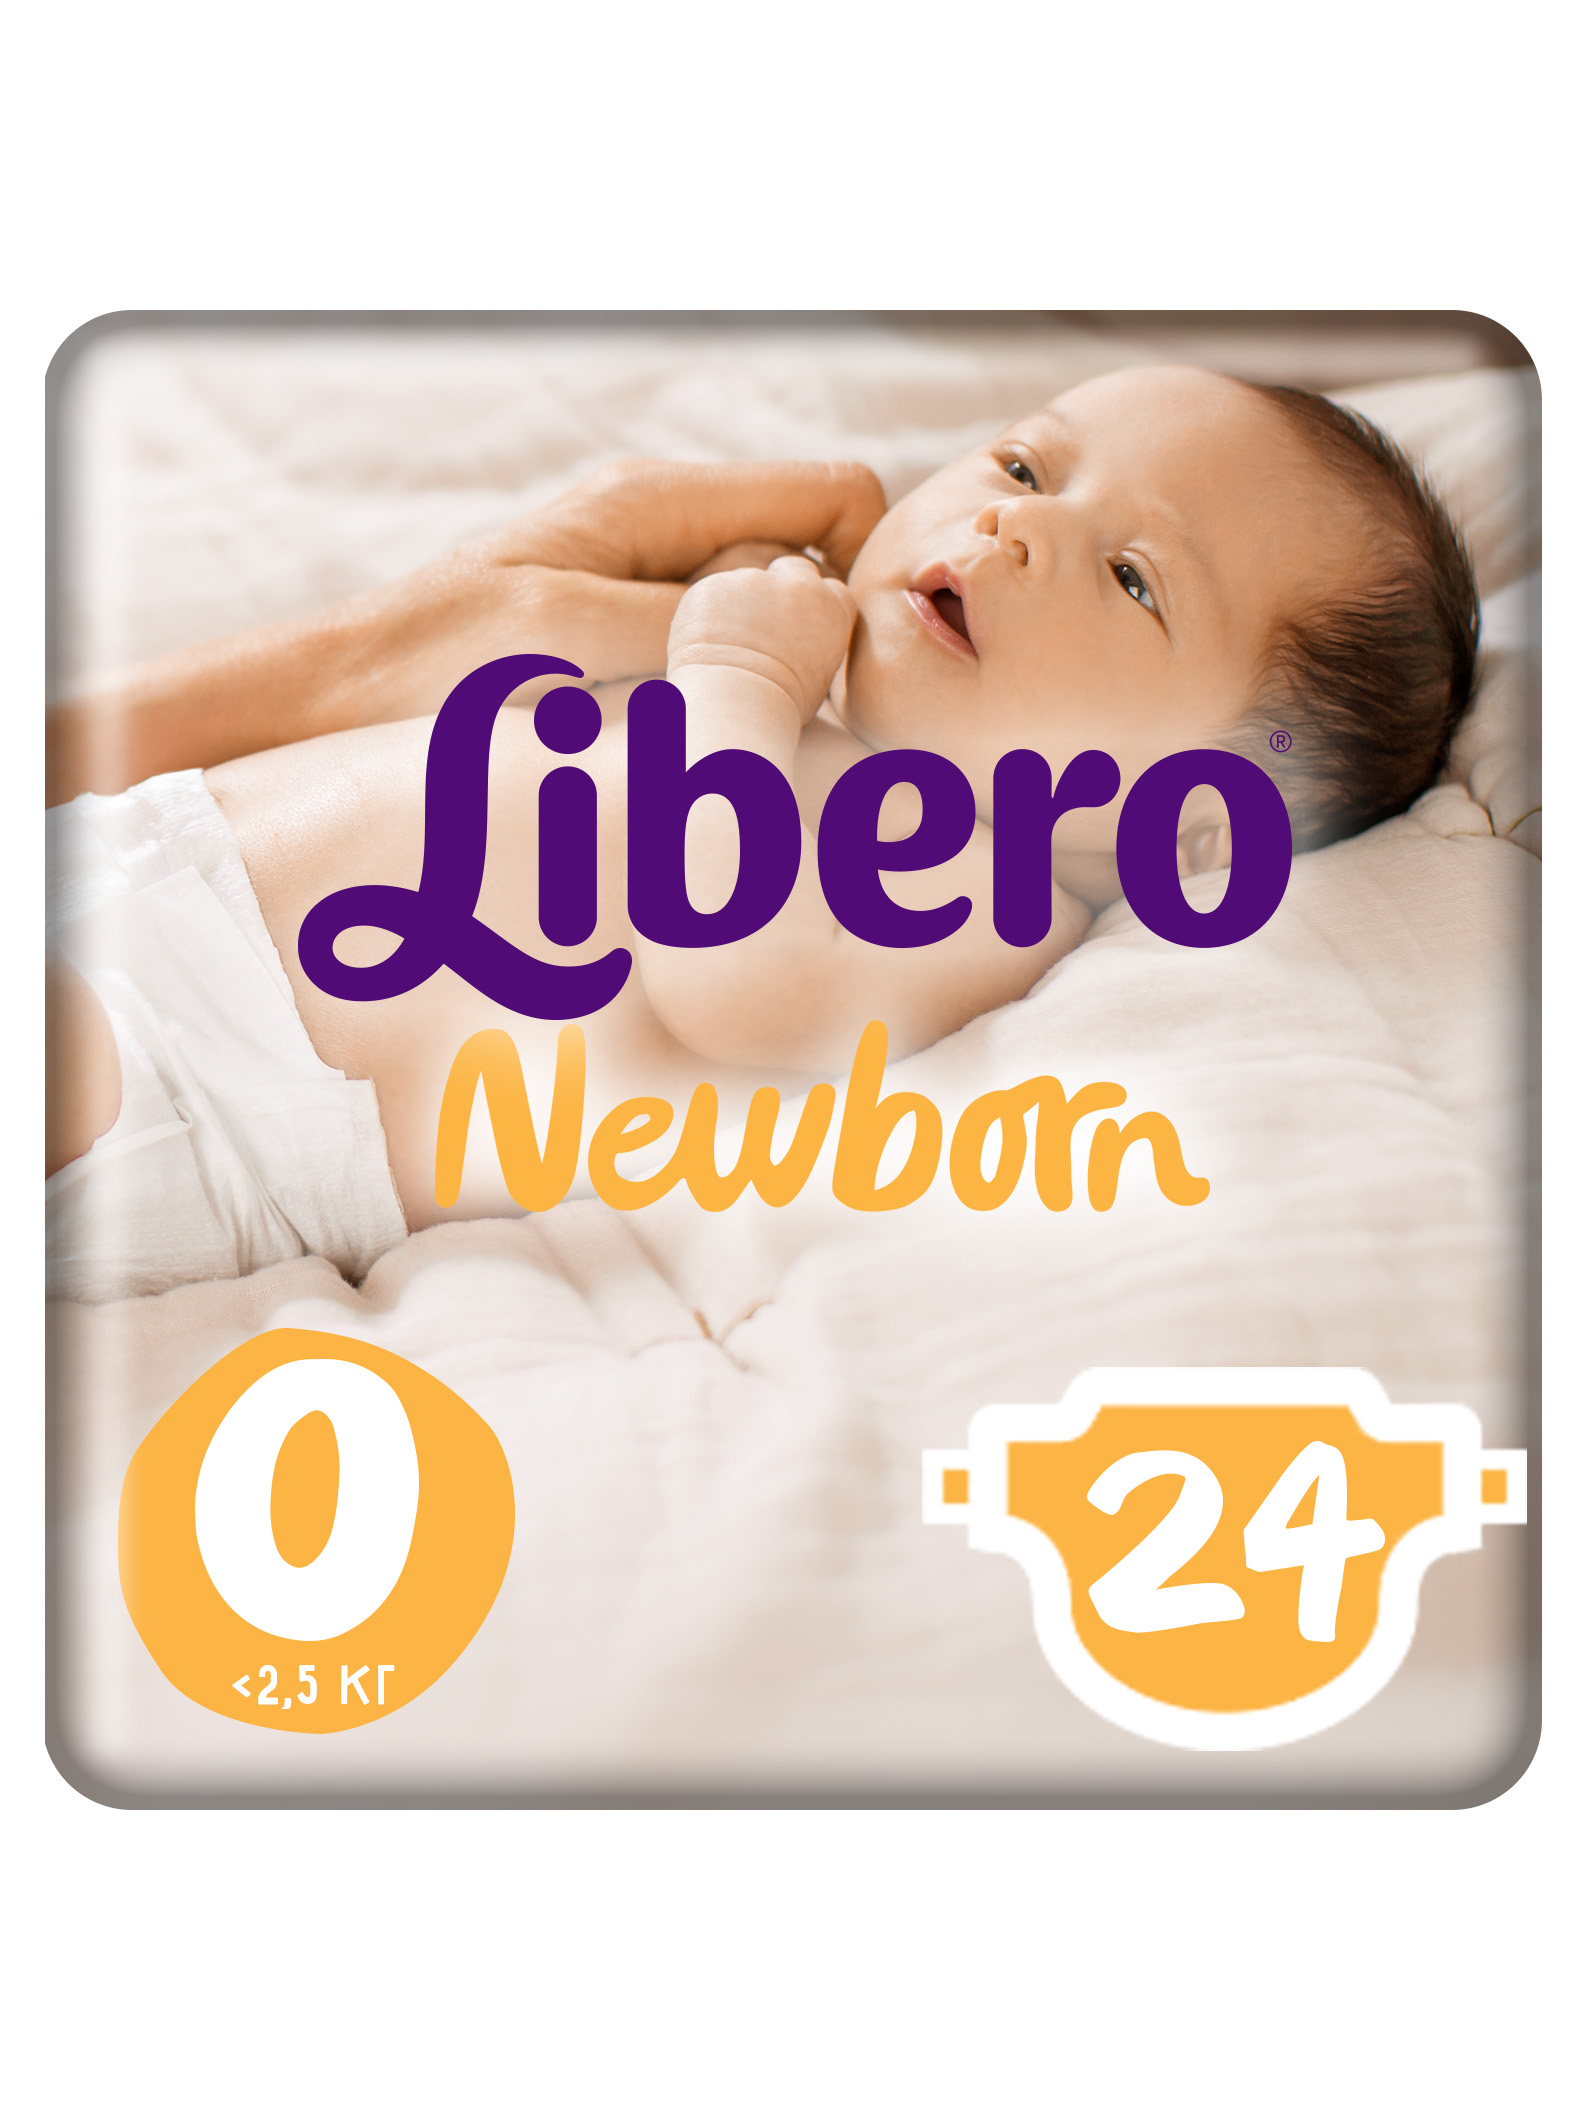 фото Подгузники для новорожденных libero newborn size 0 (<2,5кг), 24 шт.